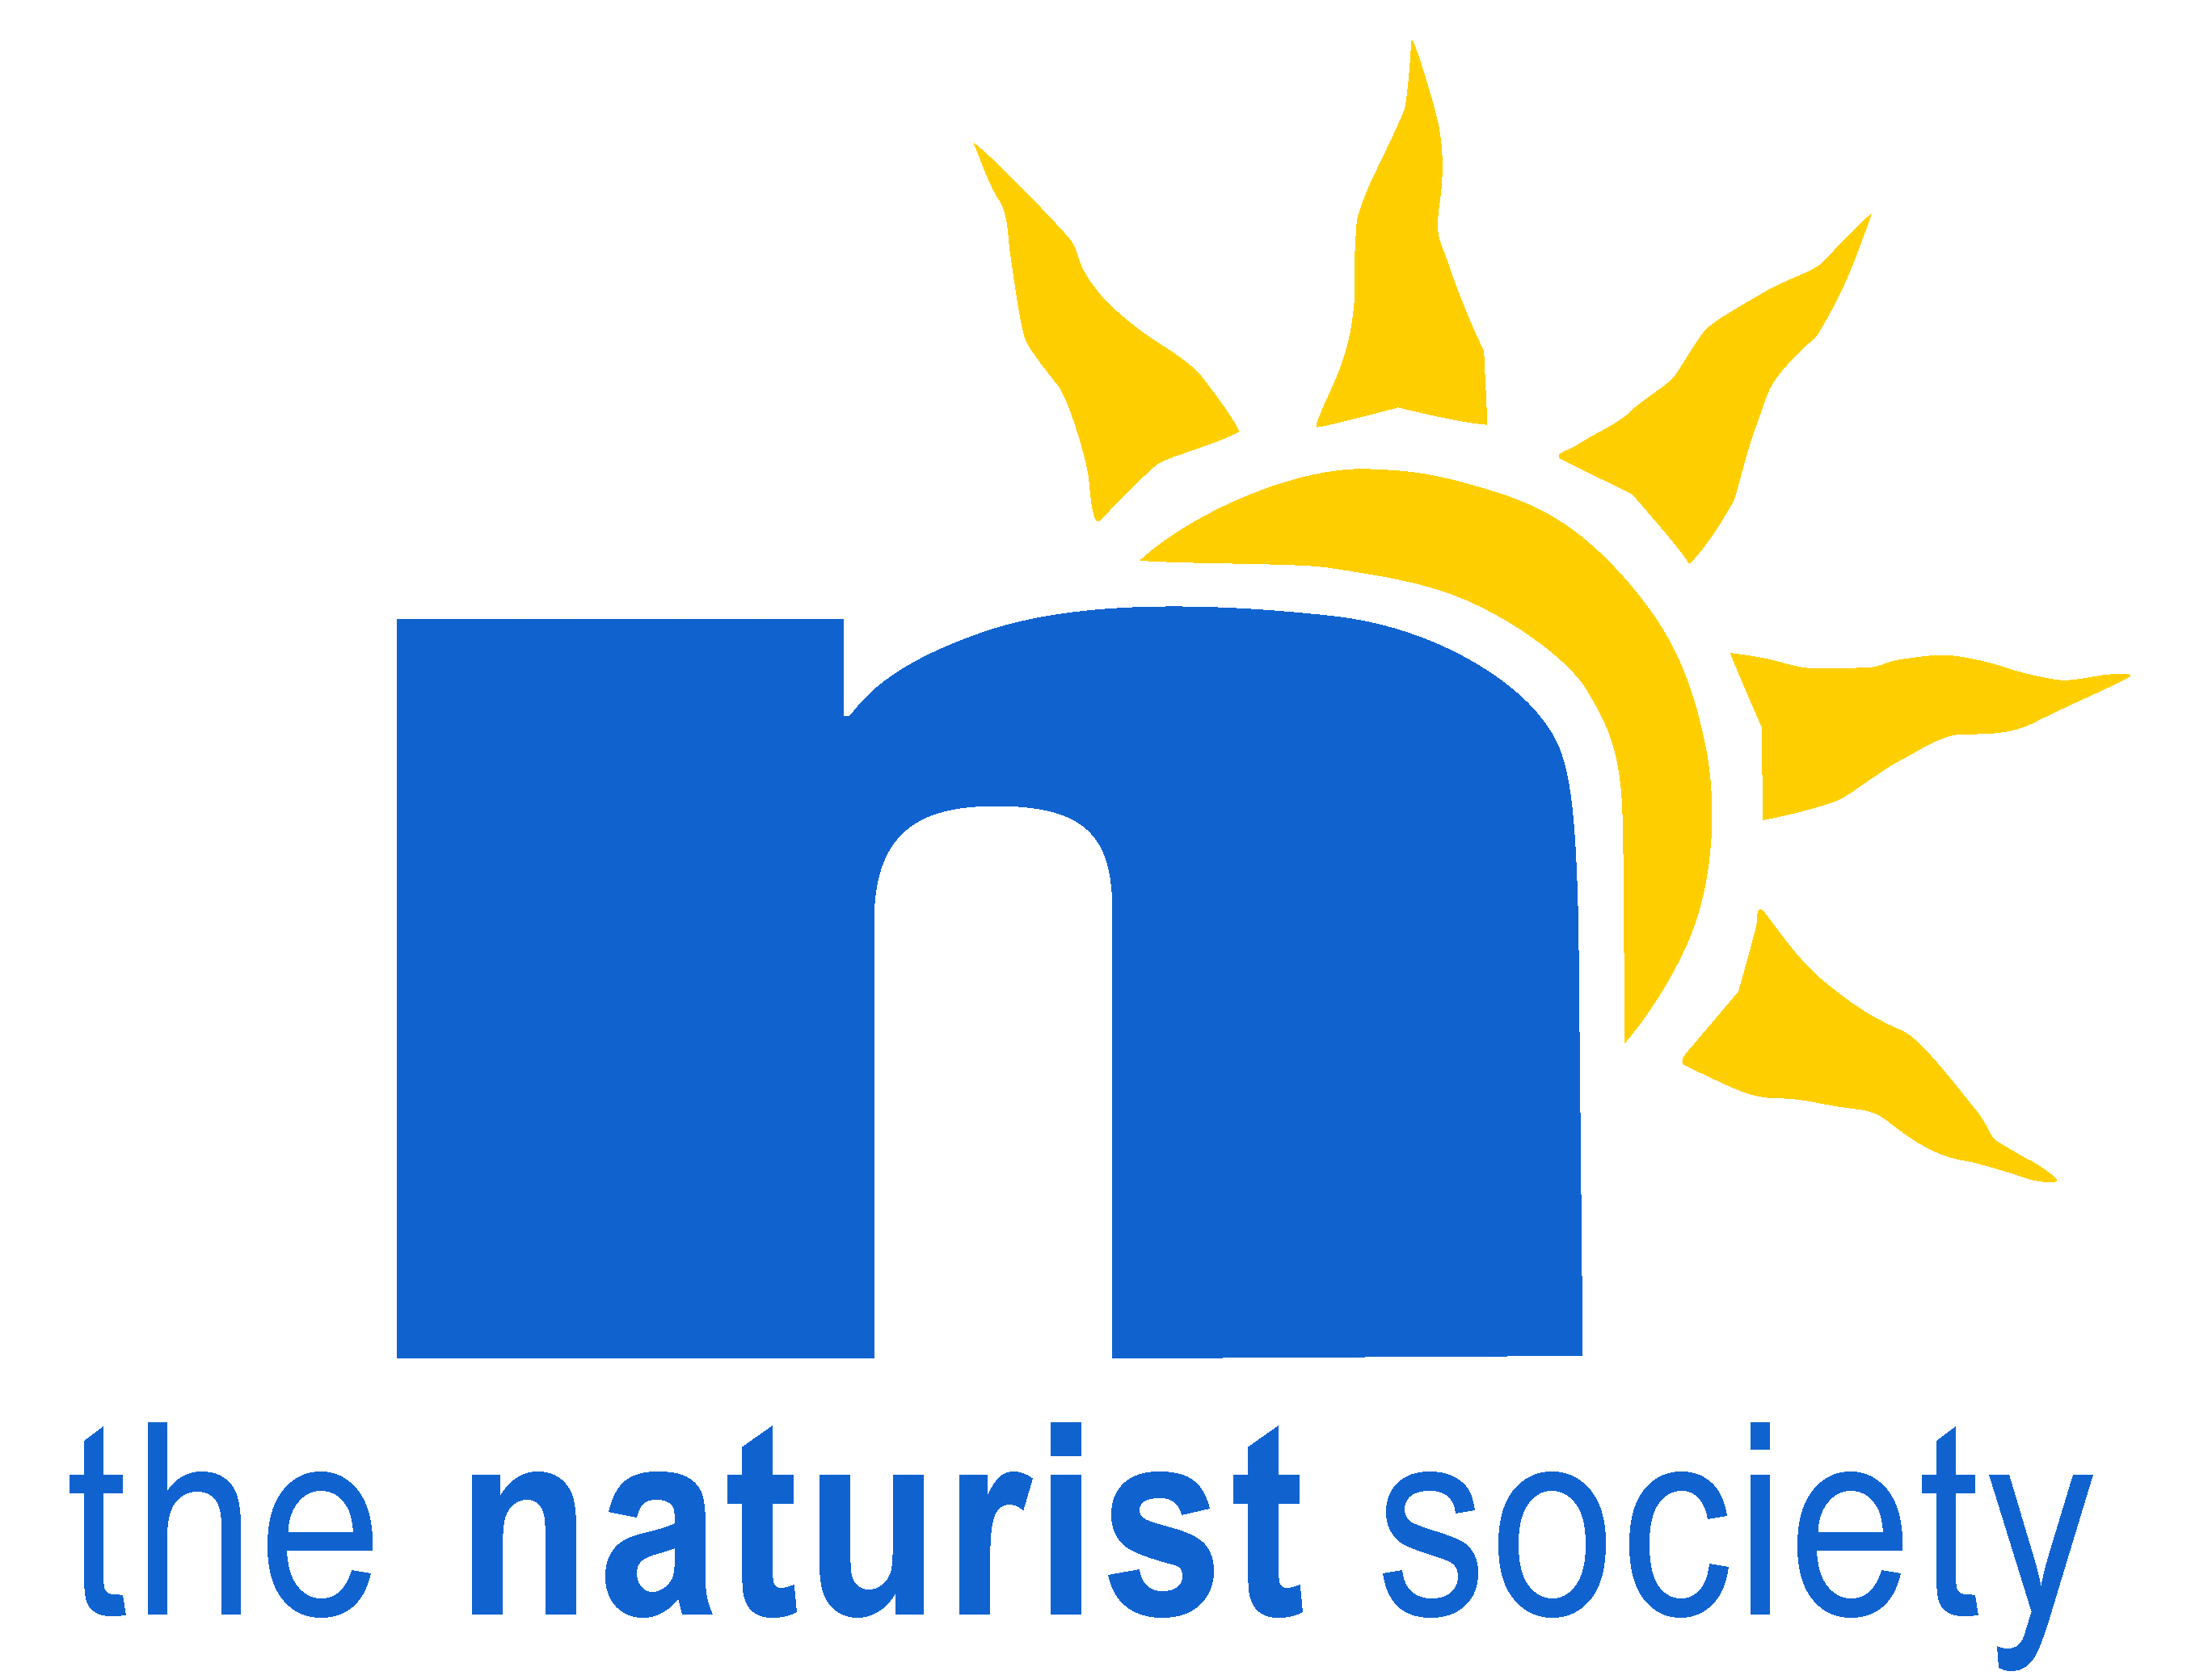 TNS-logo